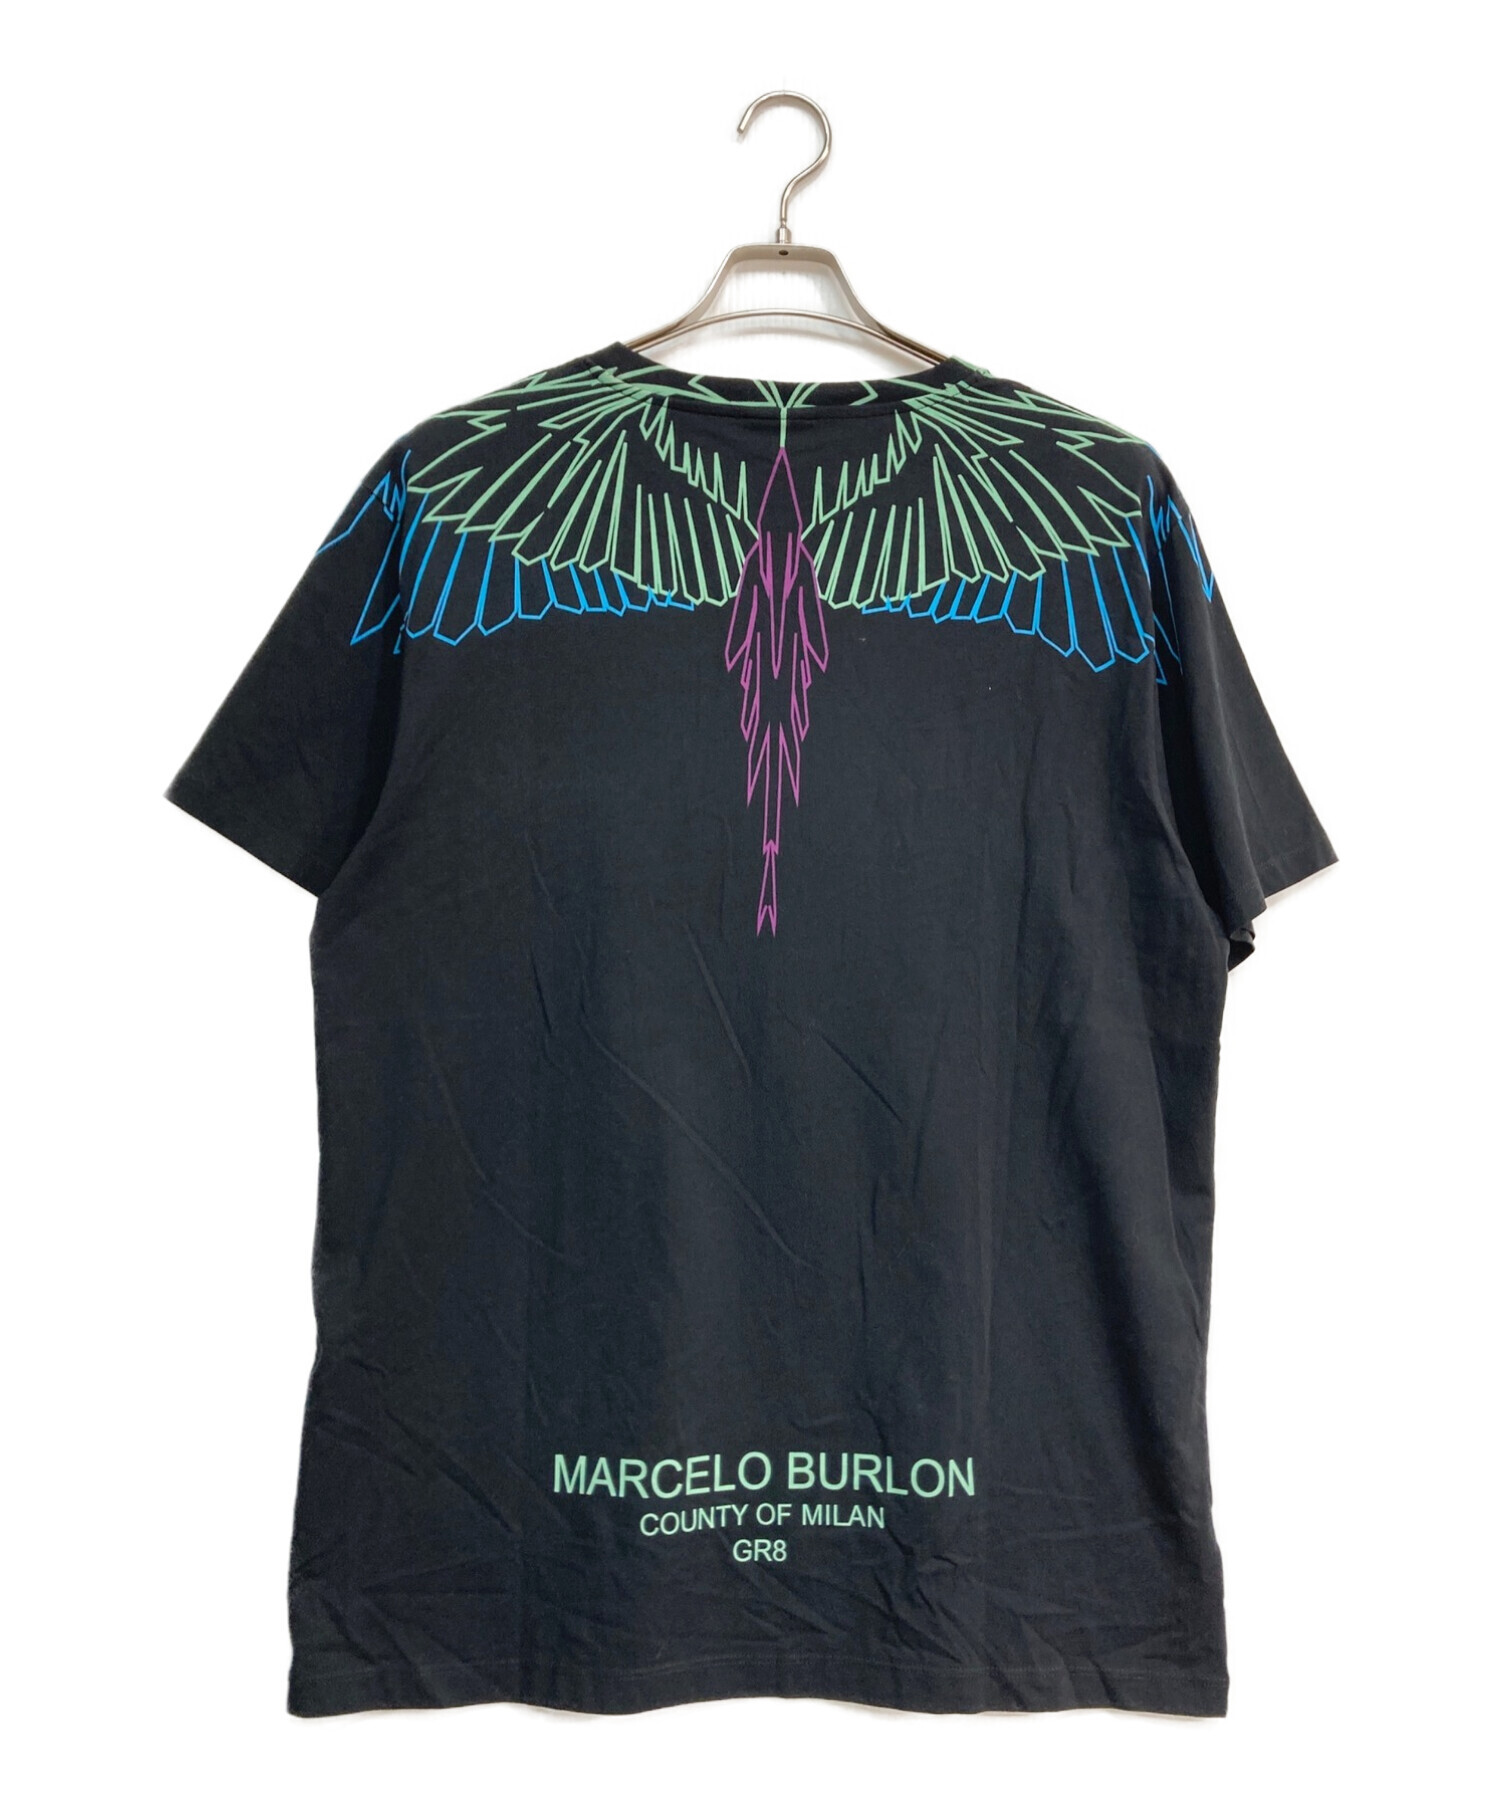 MARCELO BURLON (マルセロ バーロン) フェザープリントTシャツ　GR8限定モデル ブラック サイズ:S